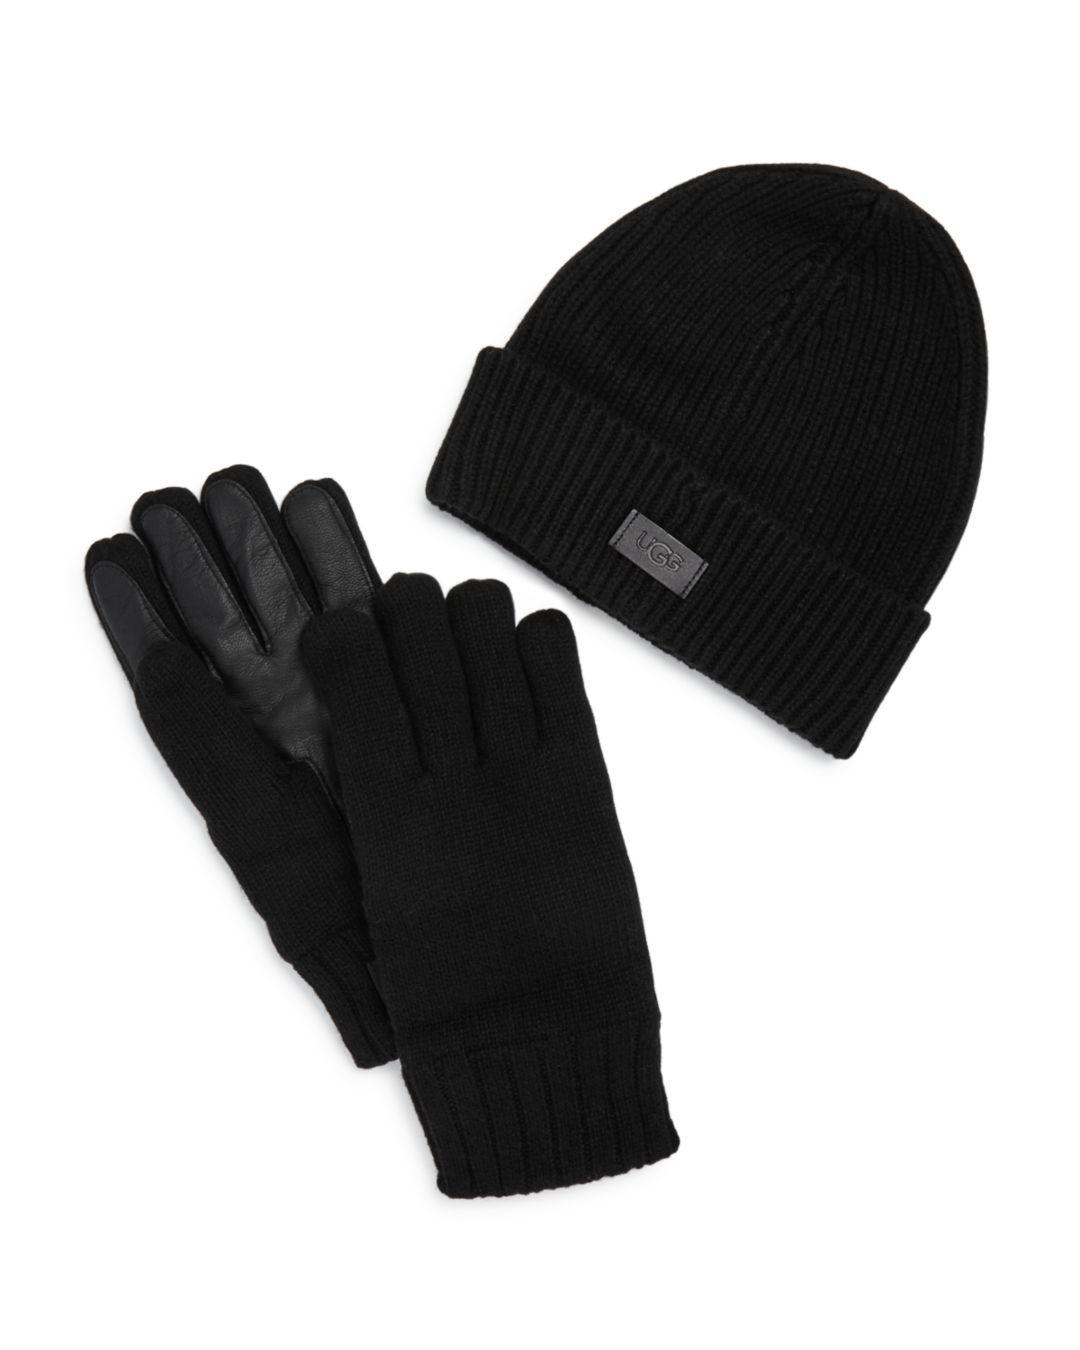 UGG Leather Hat & Smart Glove Gift Set in Black for Men - Lyst